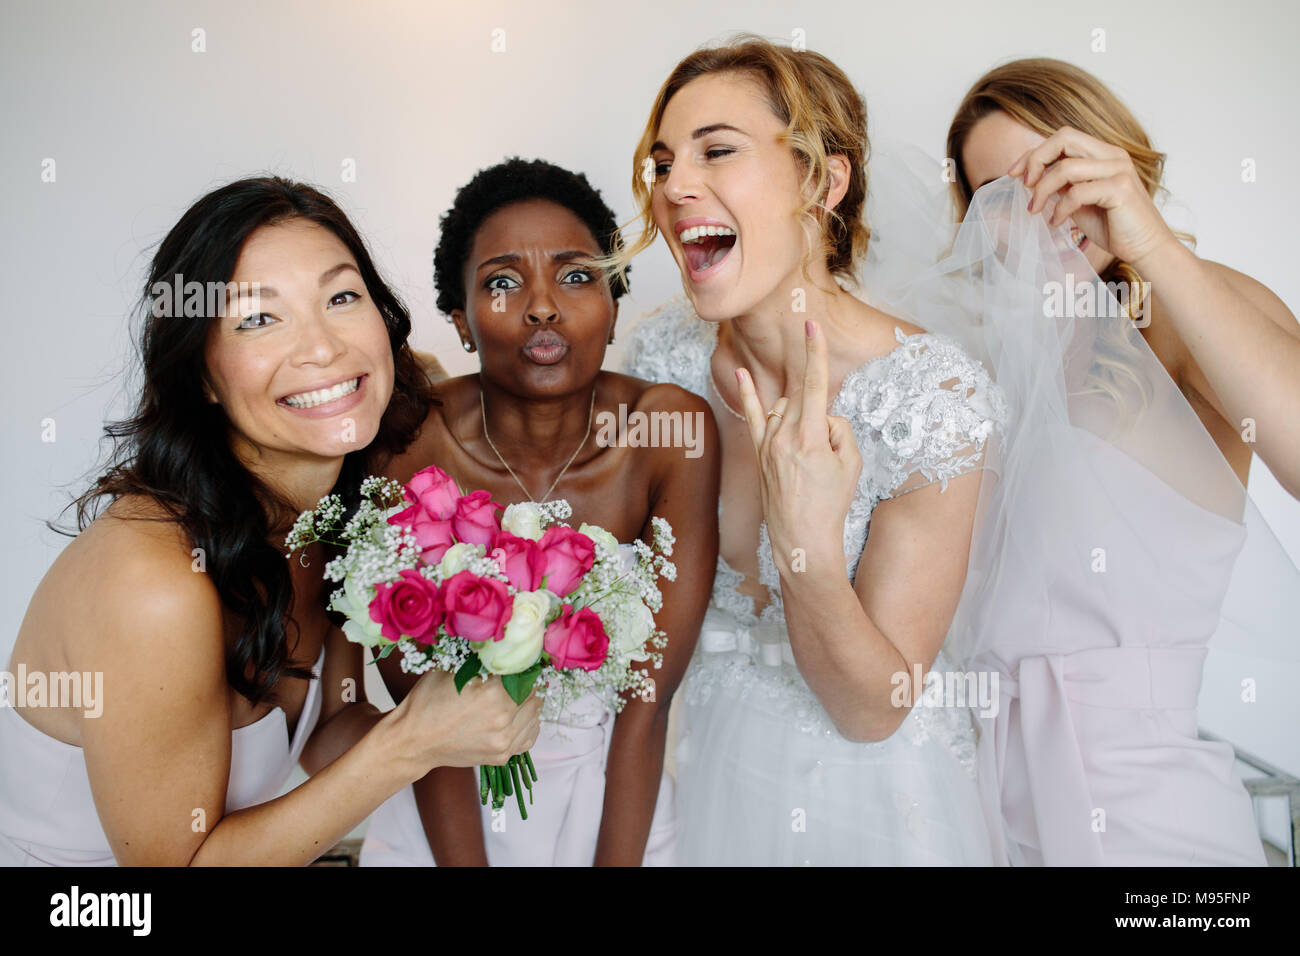 Portrait von fröhlichen Brautjungfern mit der Braut in das Zimmer am Morgen. Wunderschöne Braut im weißen Kleid Spaß mit schönen Brautjungfern in heißem Stockfoto